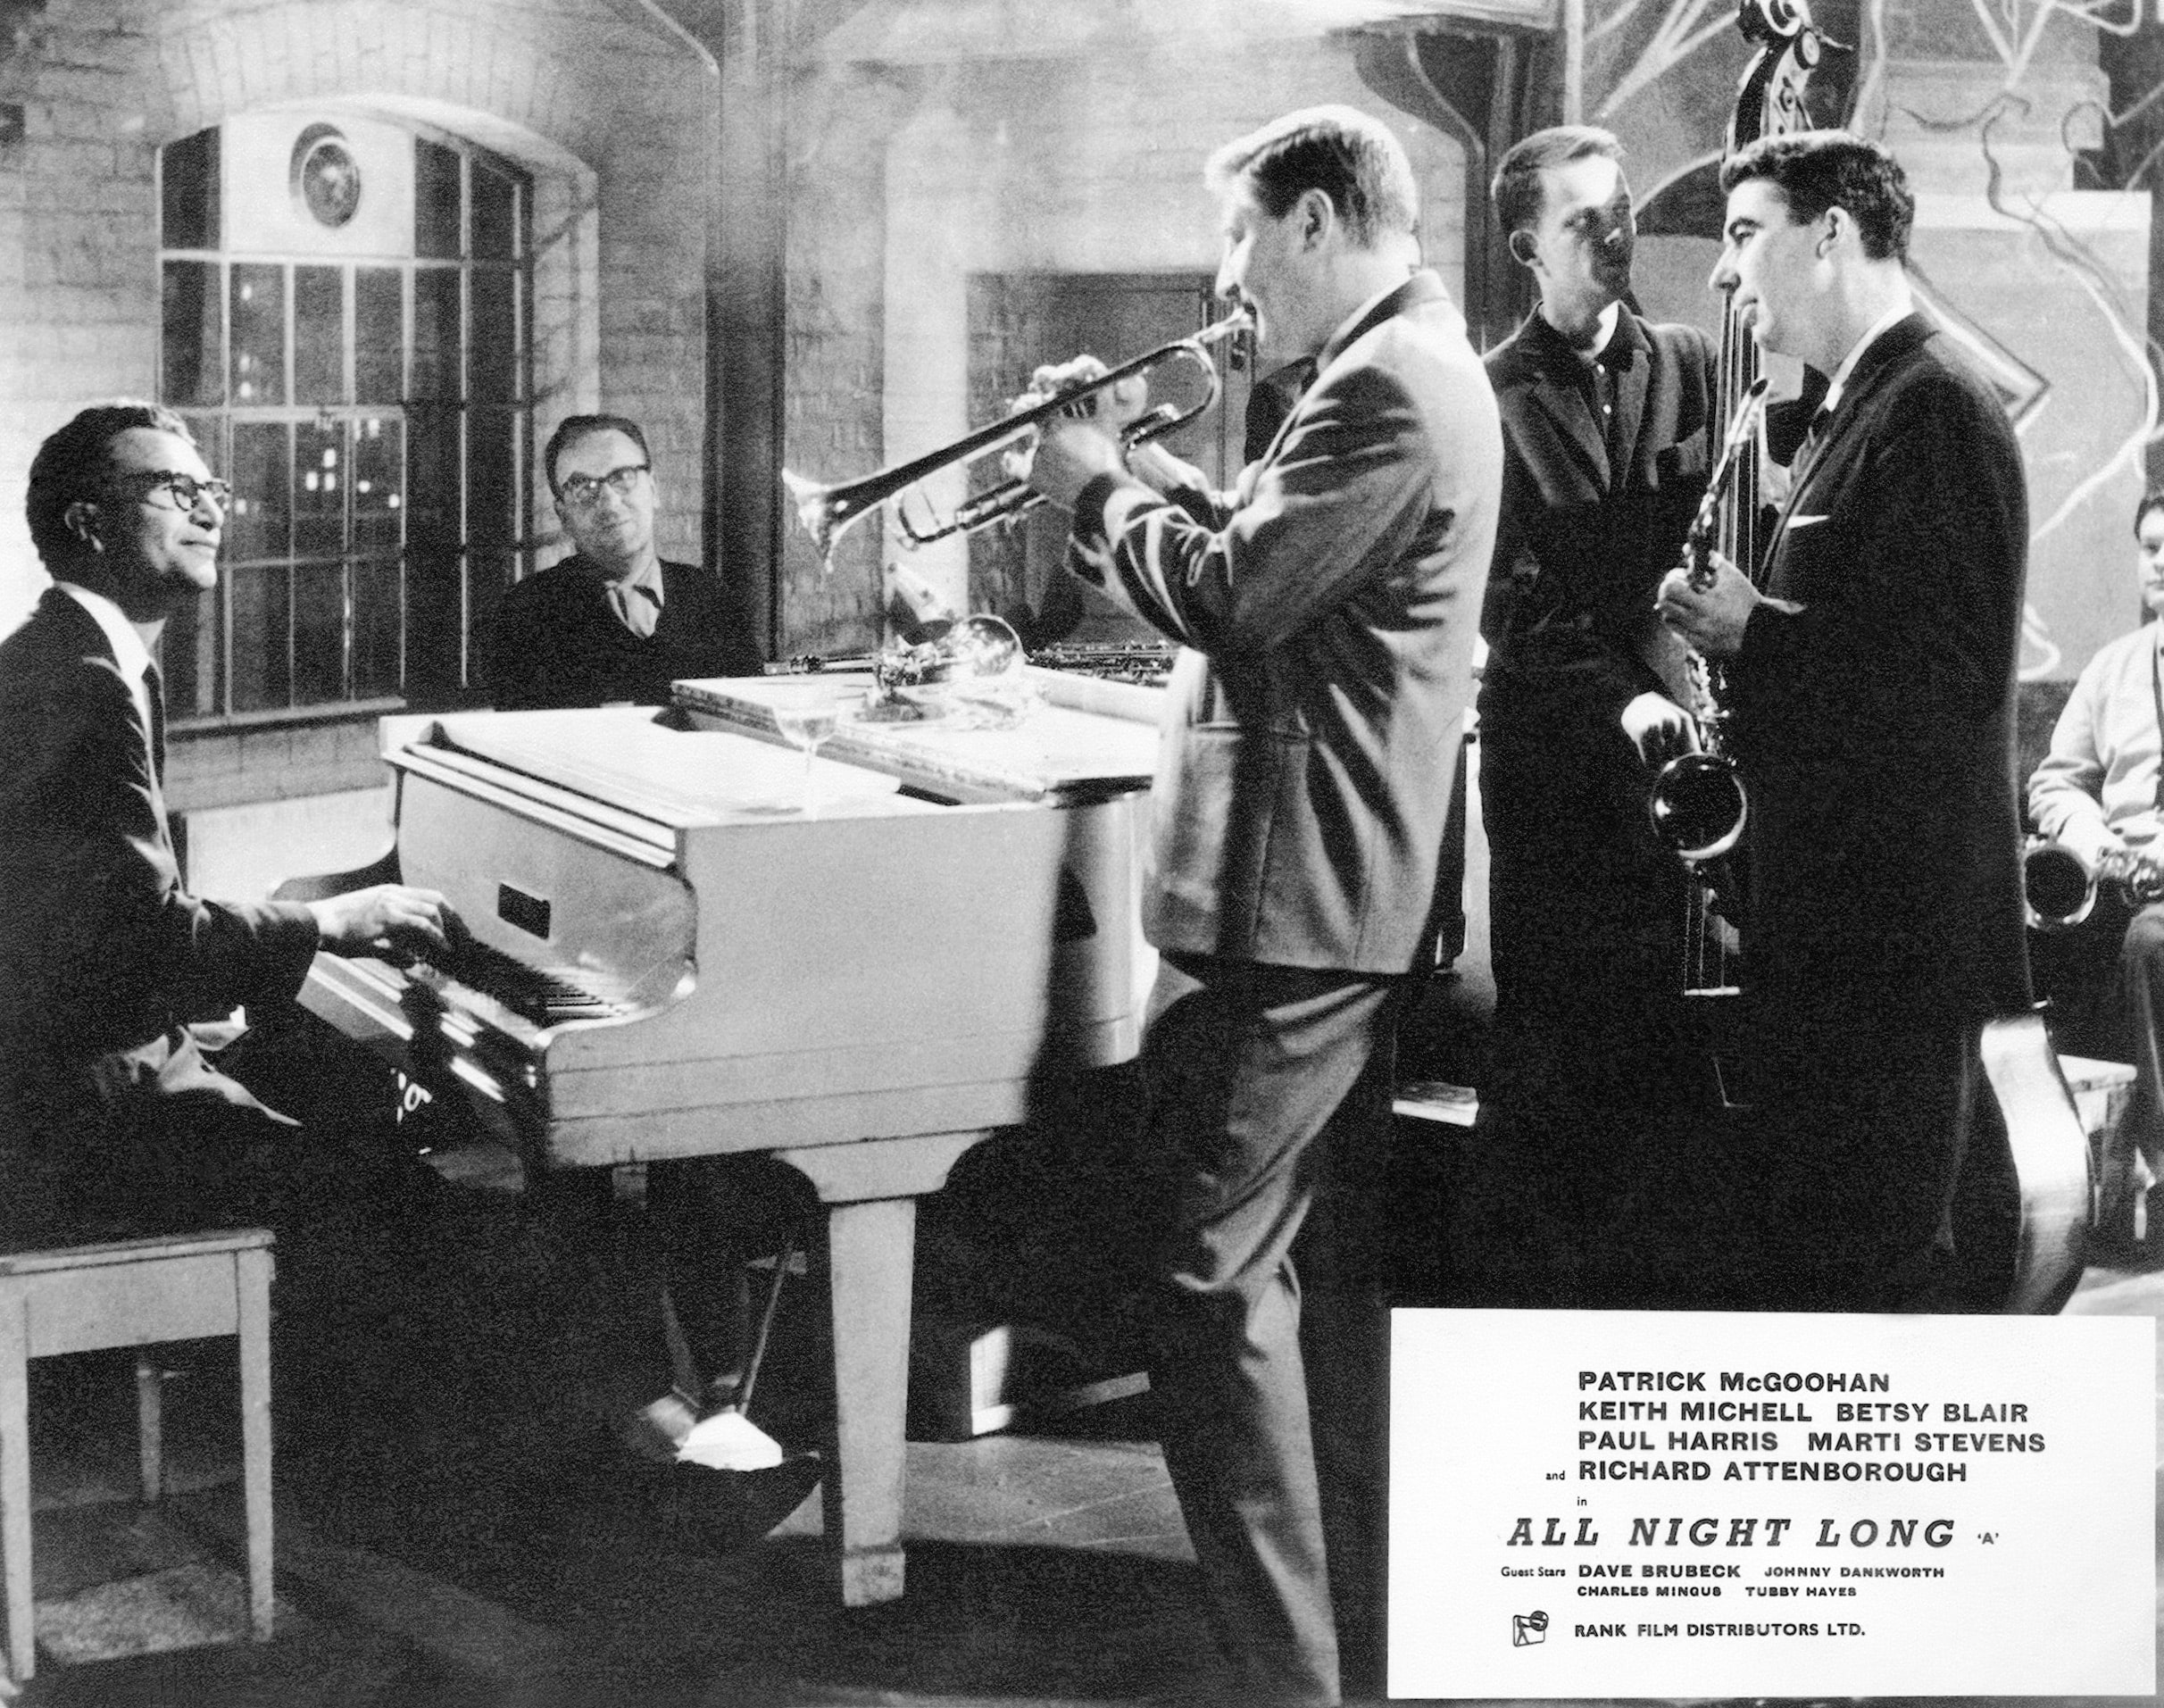 1962. Dave Brubeck nel film “All Night Long” di Basil Dearden. Il film è una sorta di “Otello” di Shakespeare ambientato nel contesto di una festa jazz londinese. Accanto a Dave Brubeck ci sono anche Charles Mingus e una dozzina di altri musicisti jazz americani e britannici.